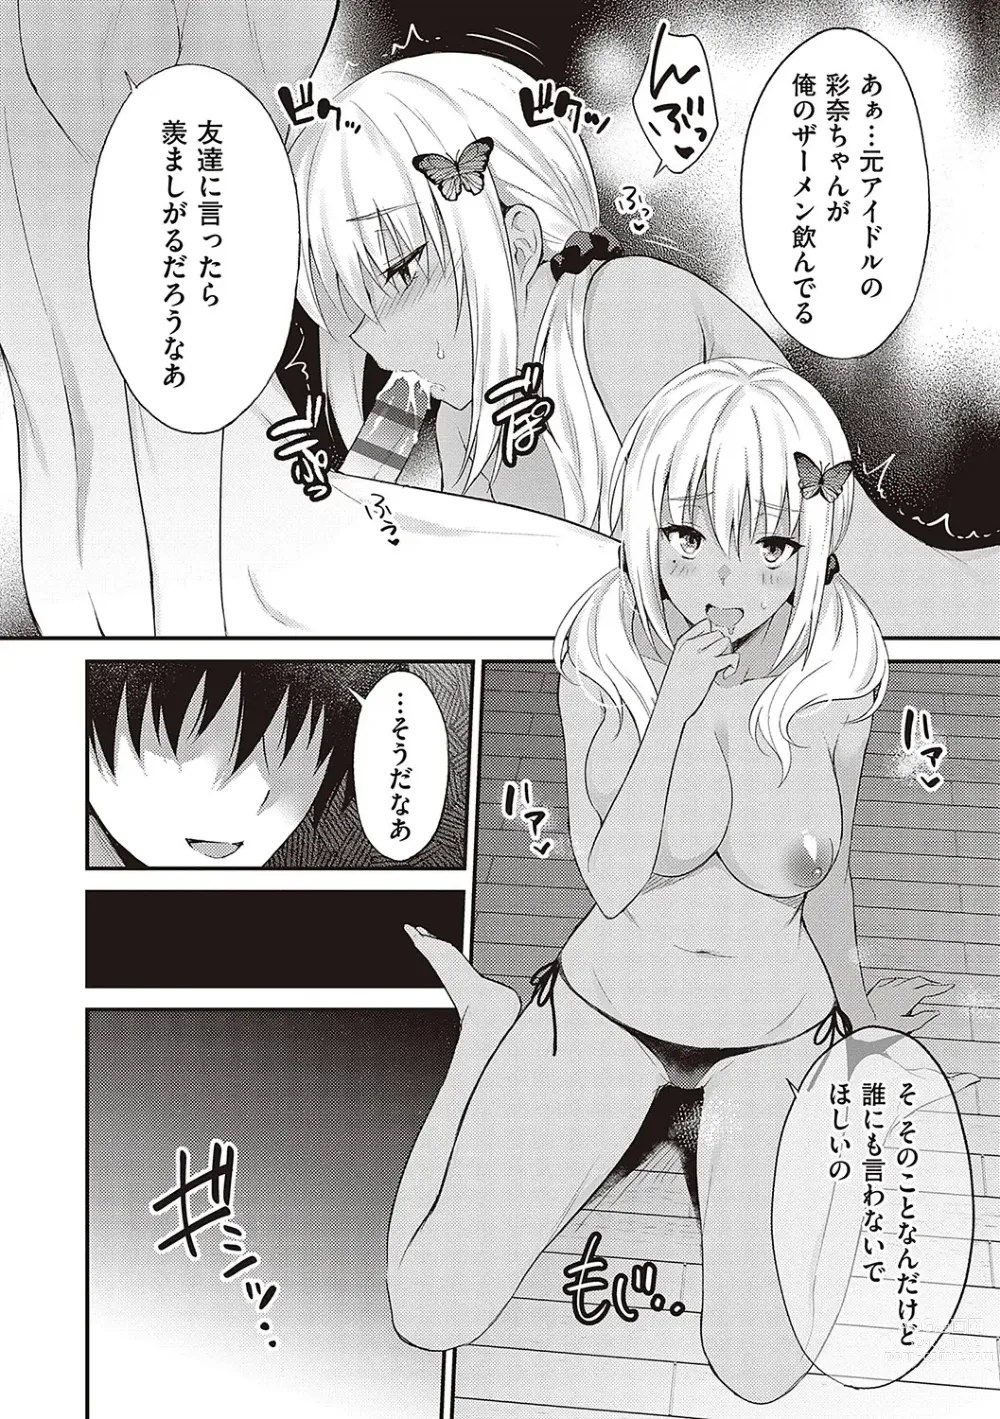 Page 236 of manga Shoujo Drop